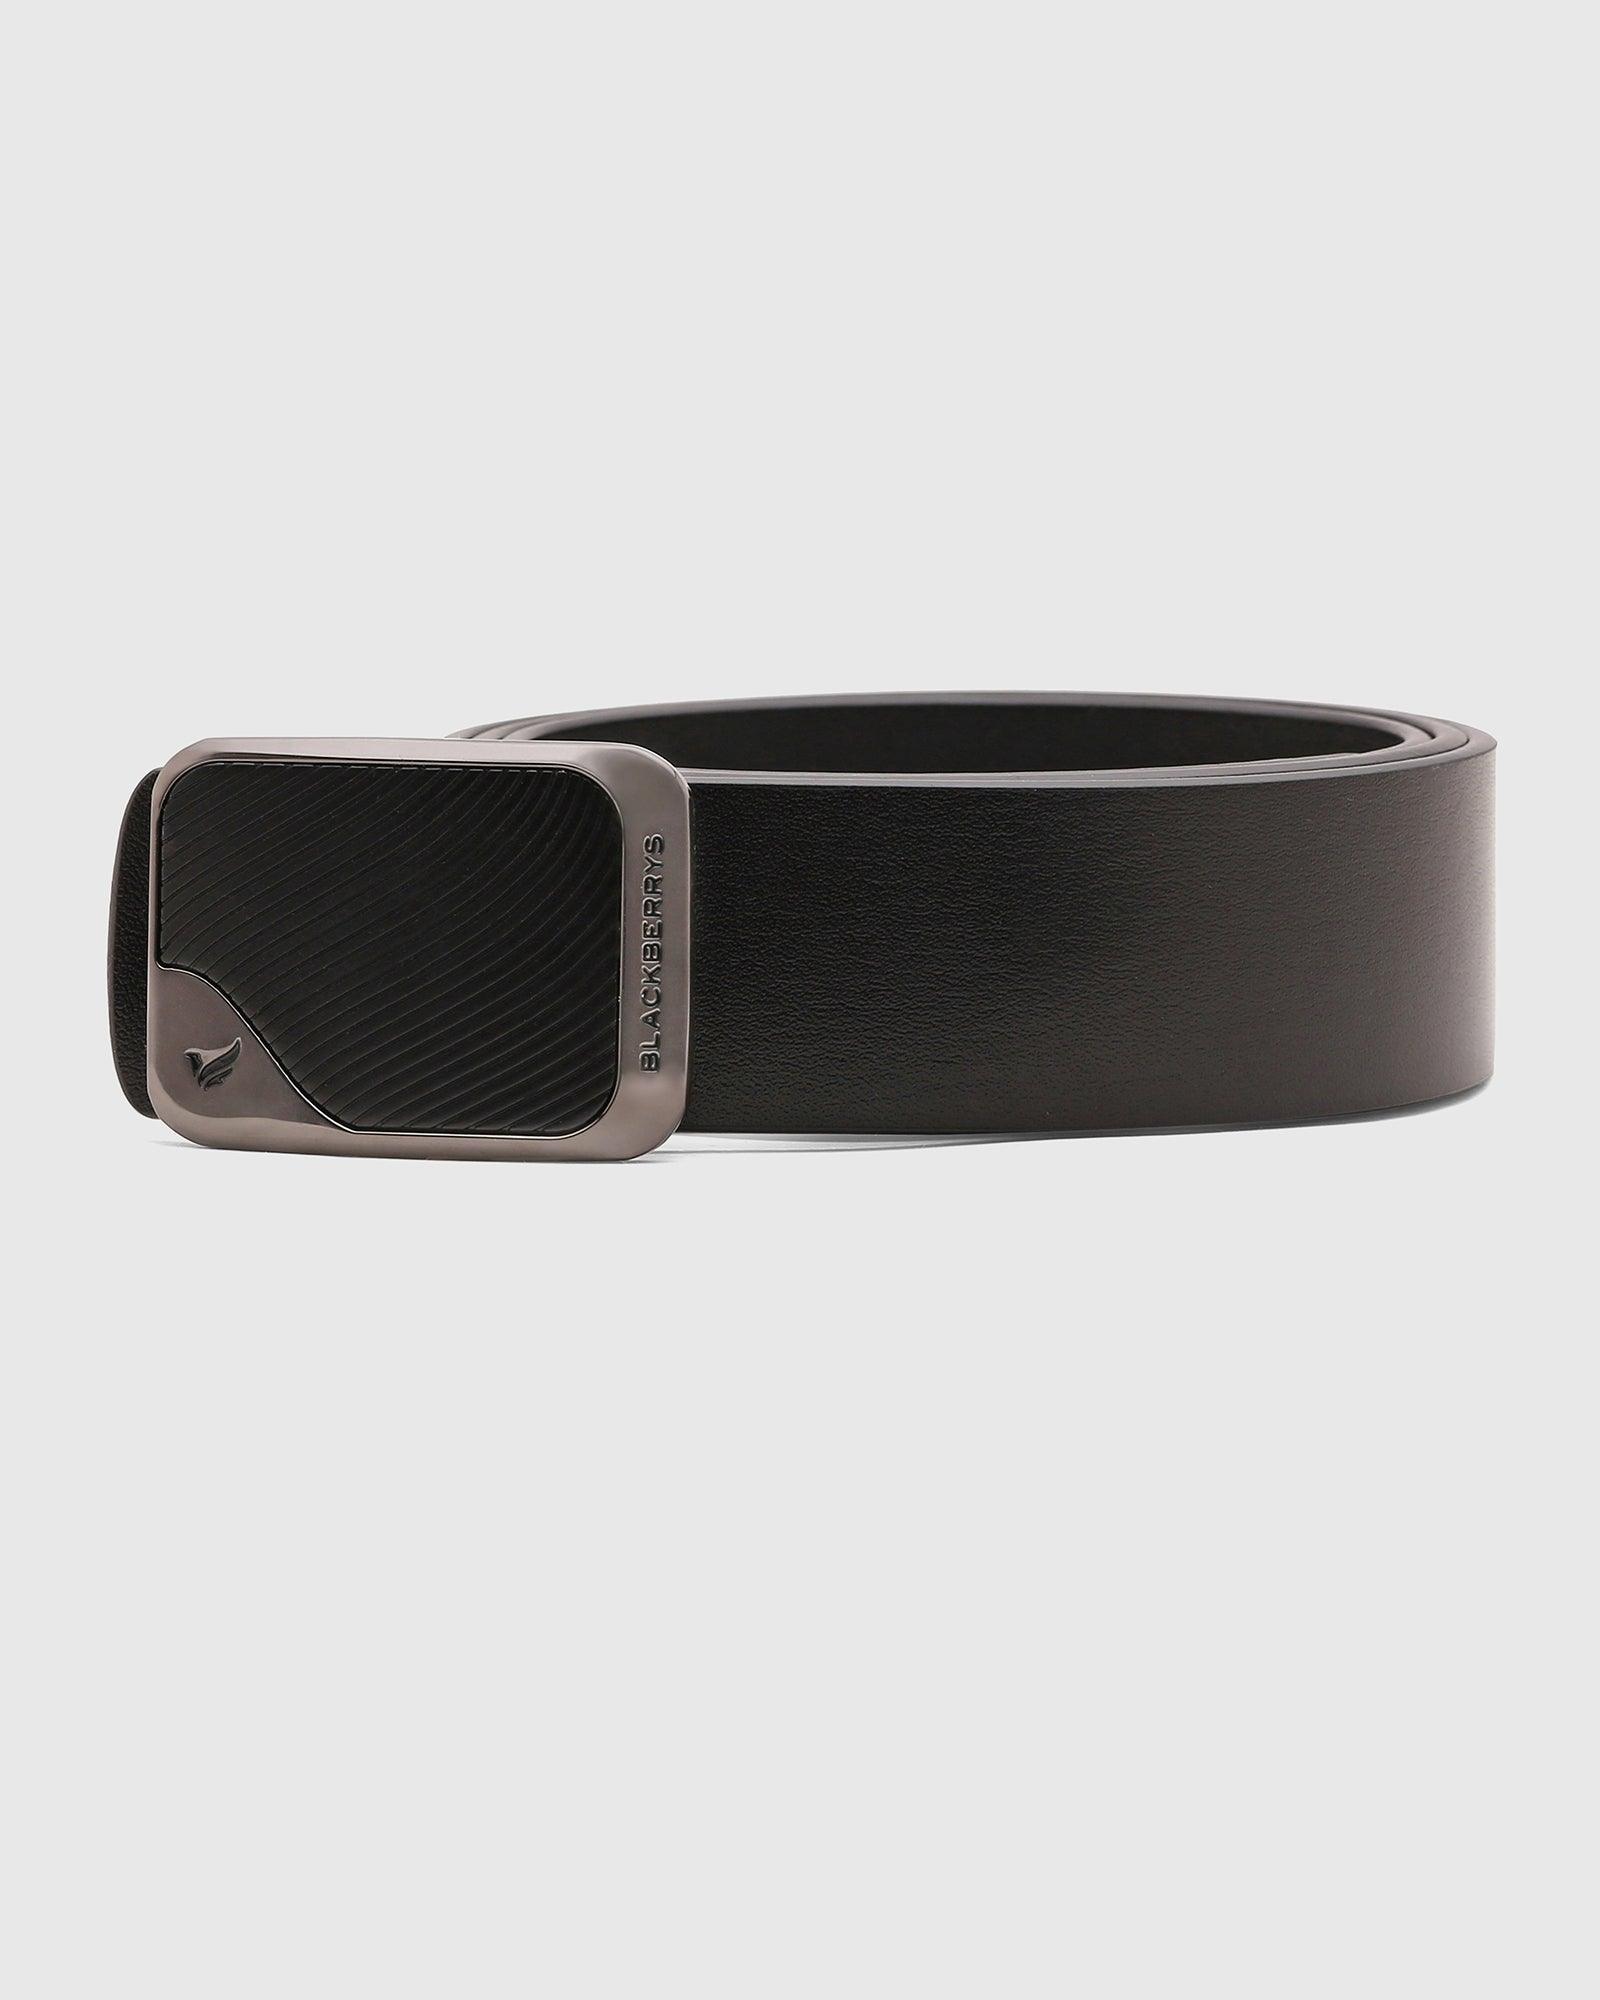 Leather Black Textured Belt - Stew